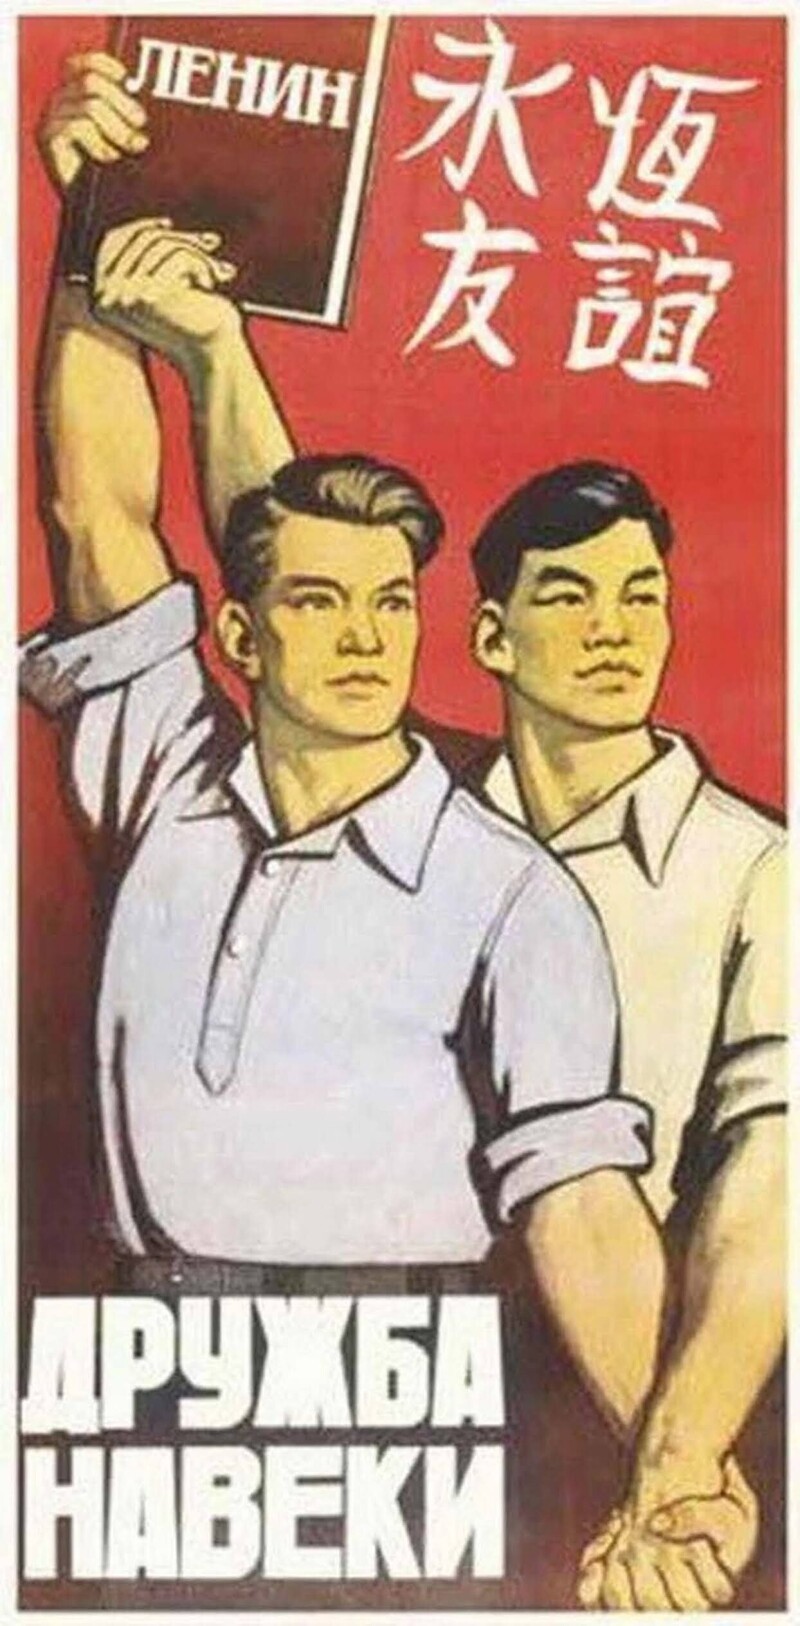 Плакаты о китайско-советской дружбе... кажется, даже слишком горячей